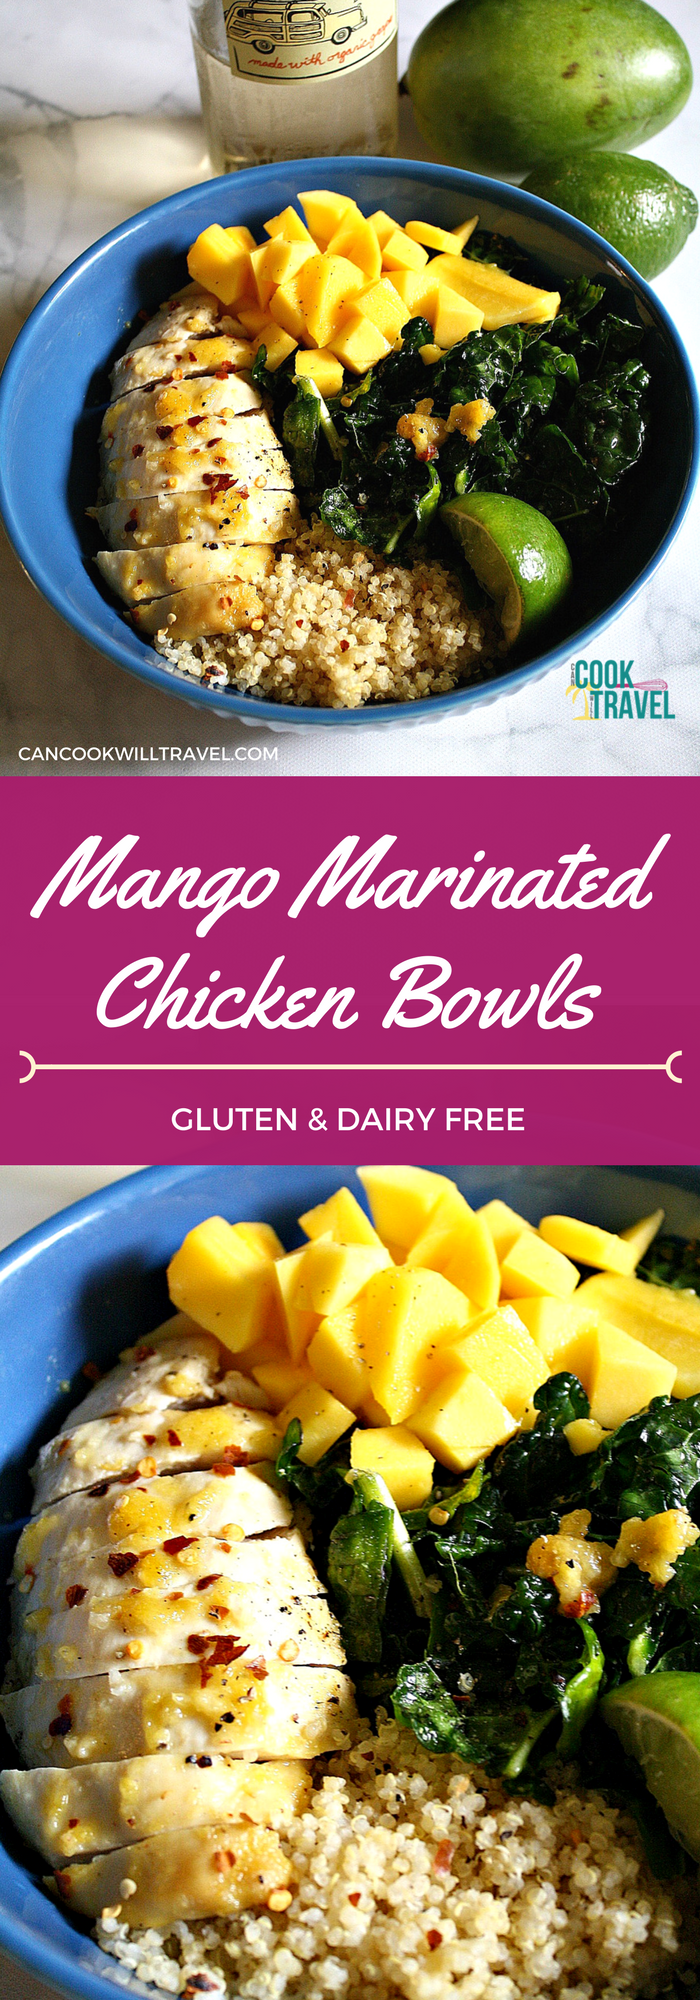 Mango Chicken Bowls_Collage1